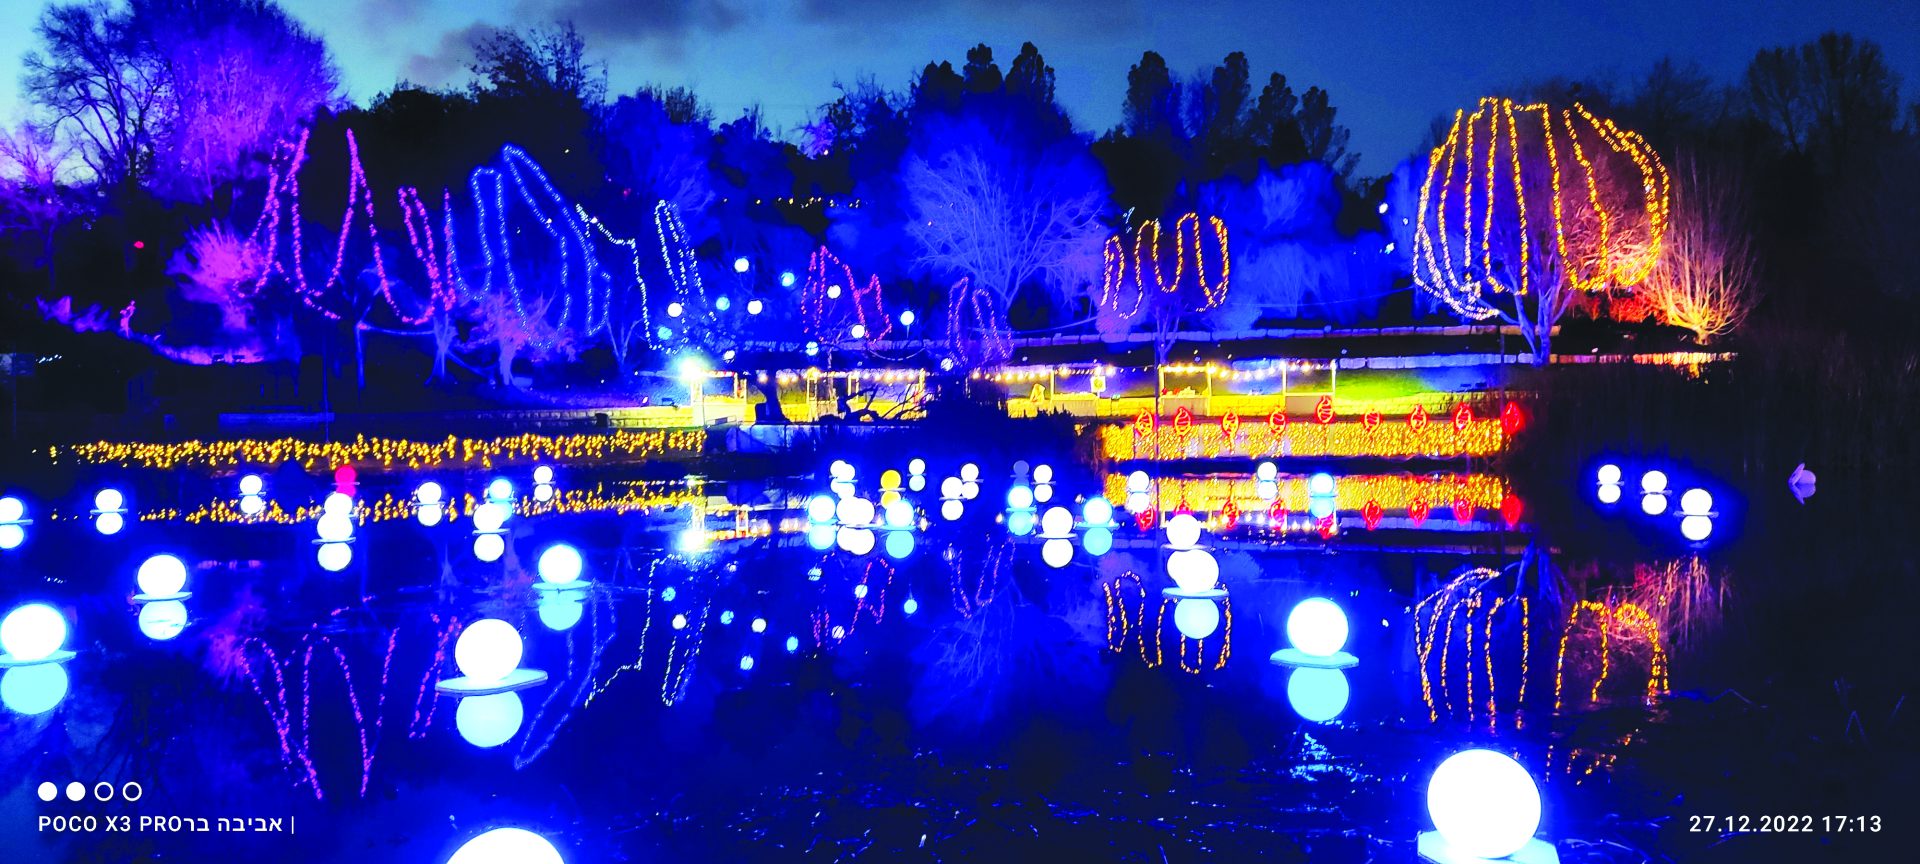 פסטיבל האורות בגן הבוטני האוניברסיטאי בגבעת רם